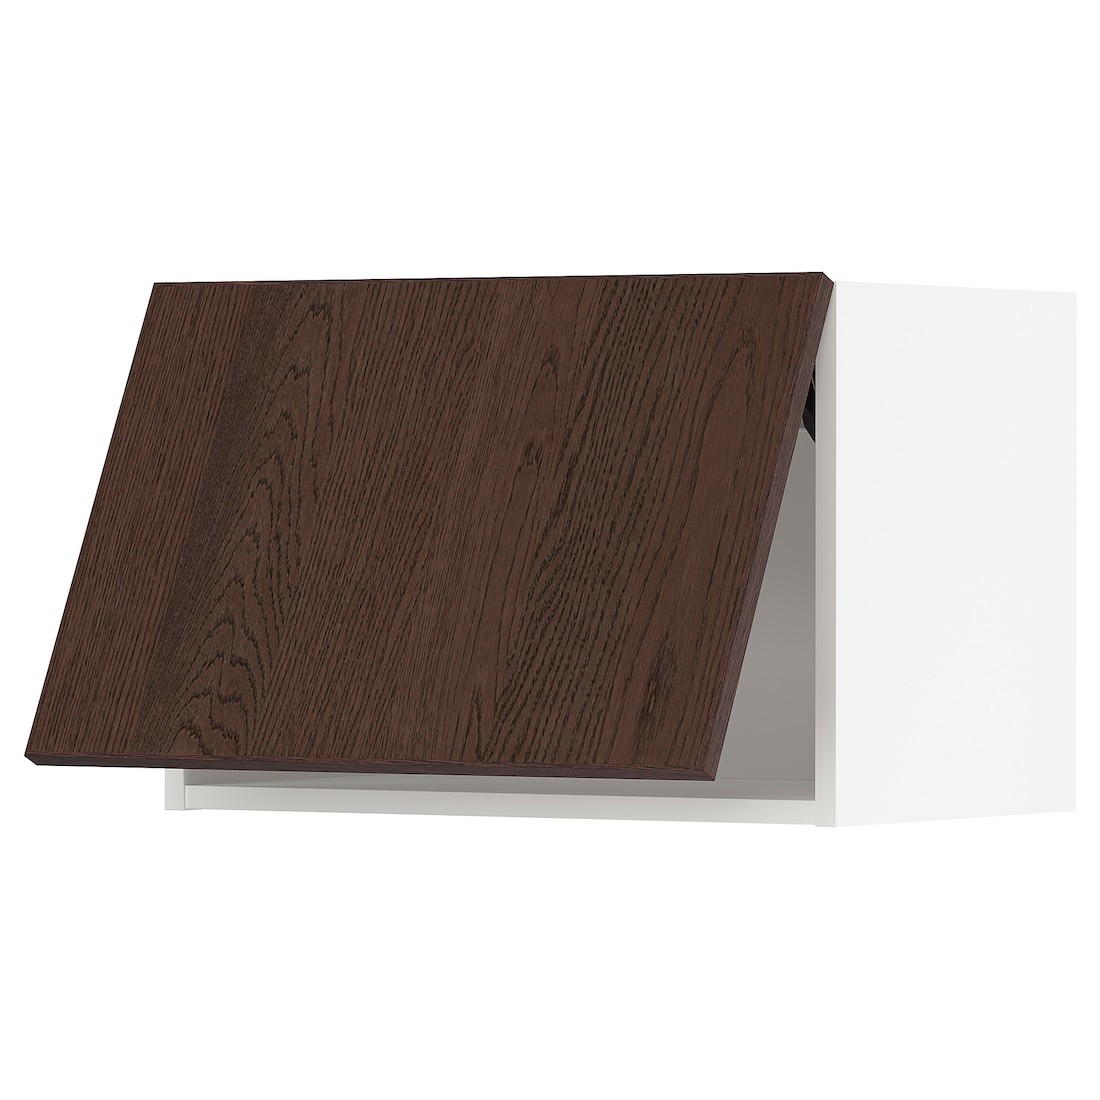 METOD МЕТОД Навесной горизонтальный шкаф, белый / Sinarp коричневый, 60x40 см